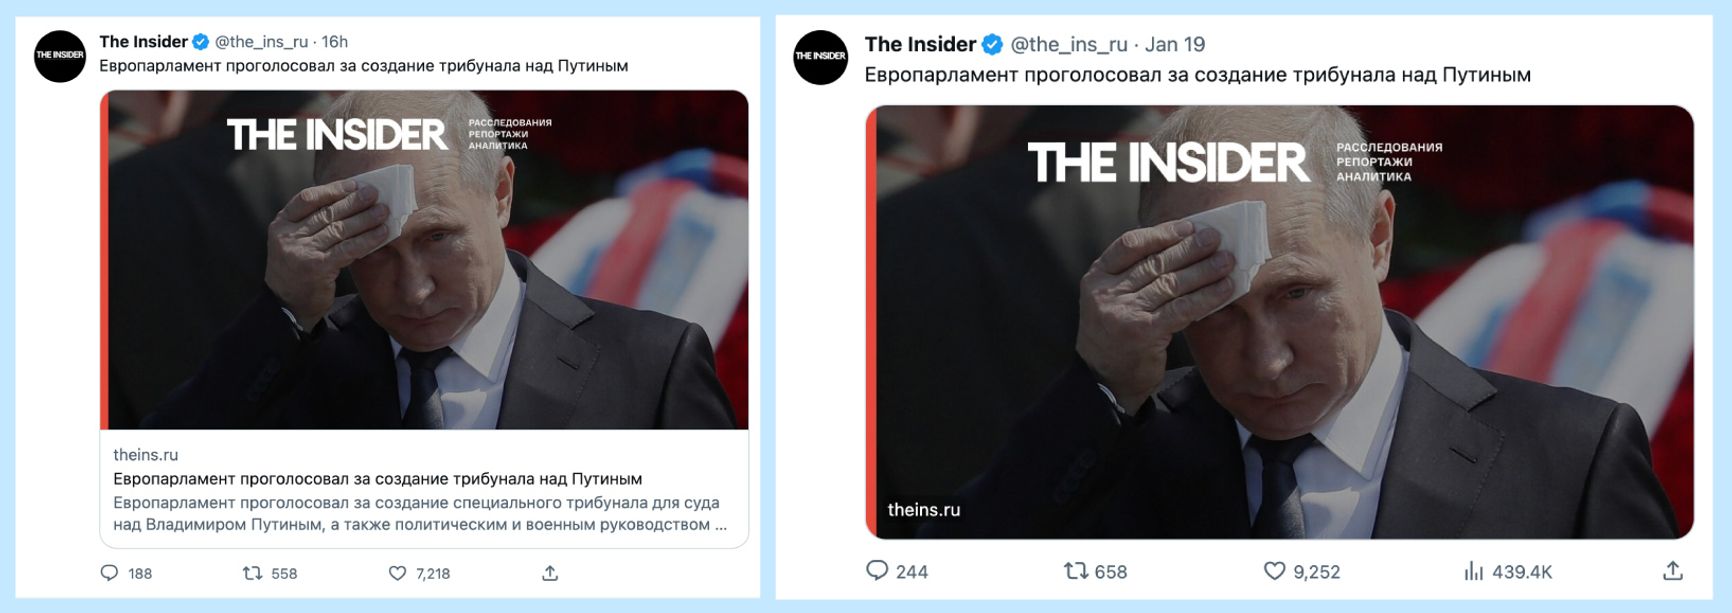 Один и тот же пост в аккаунте The Insider до и после отказа соцсети от заголовков. Приложенная к посту ссылка стала незаметна